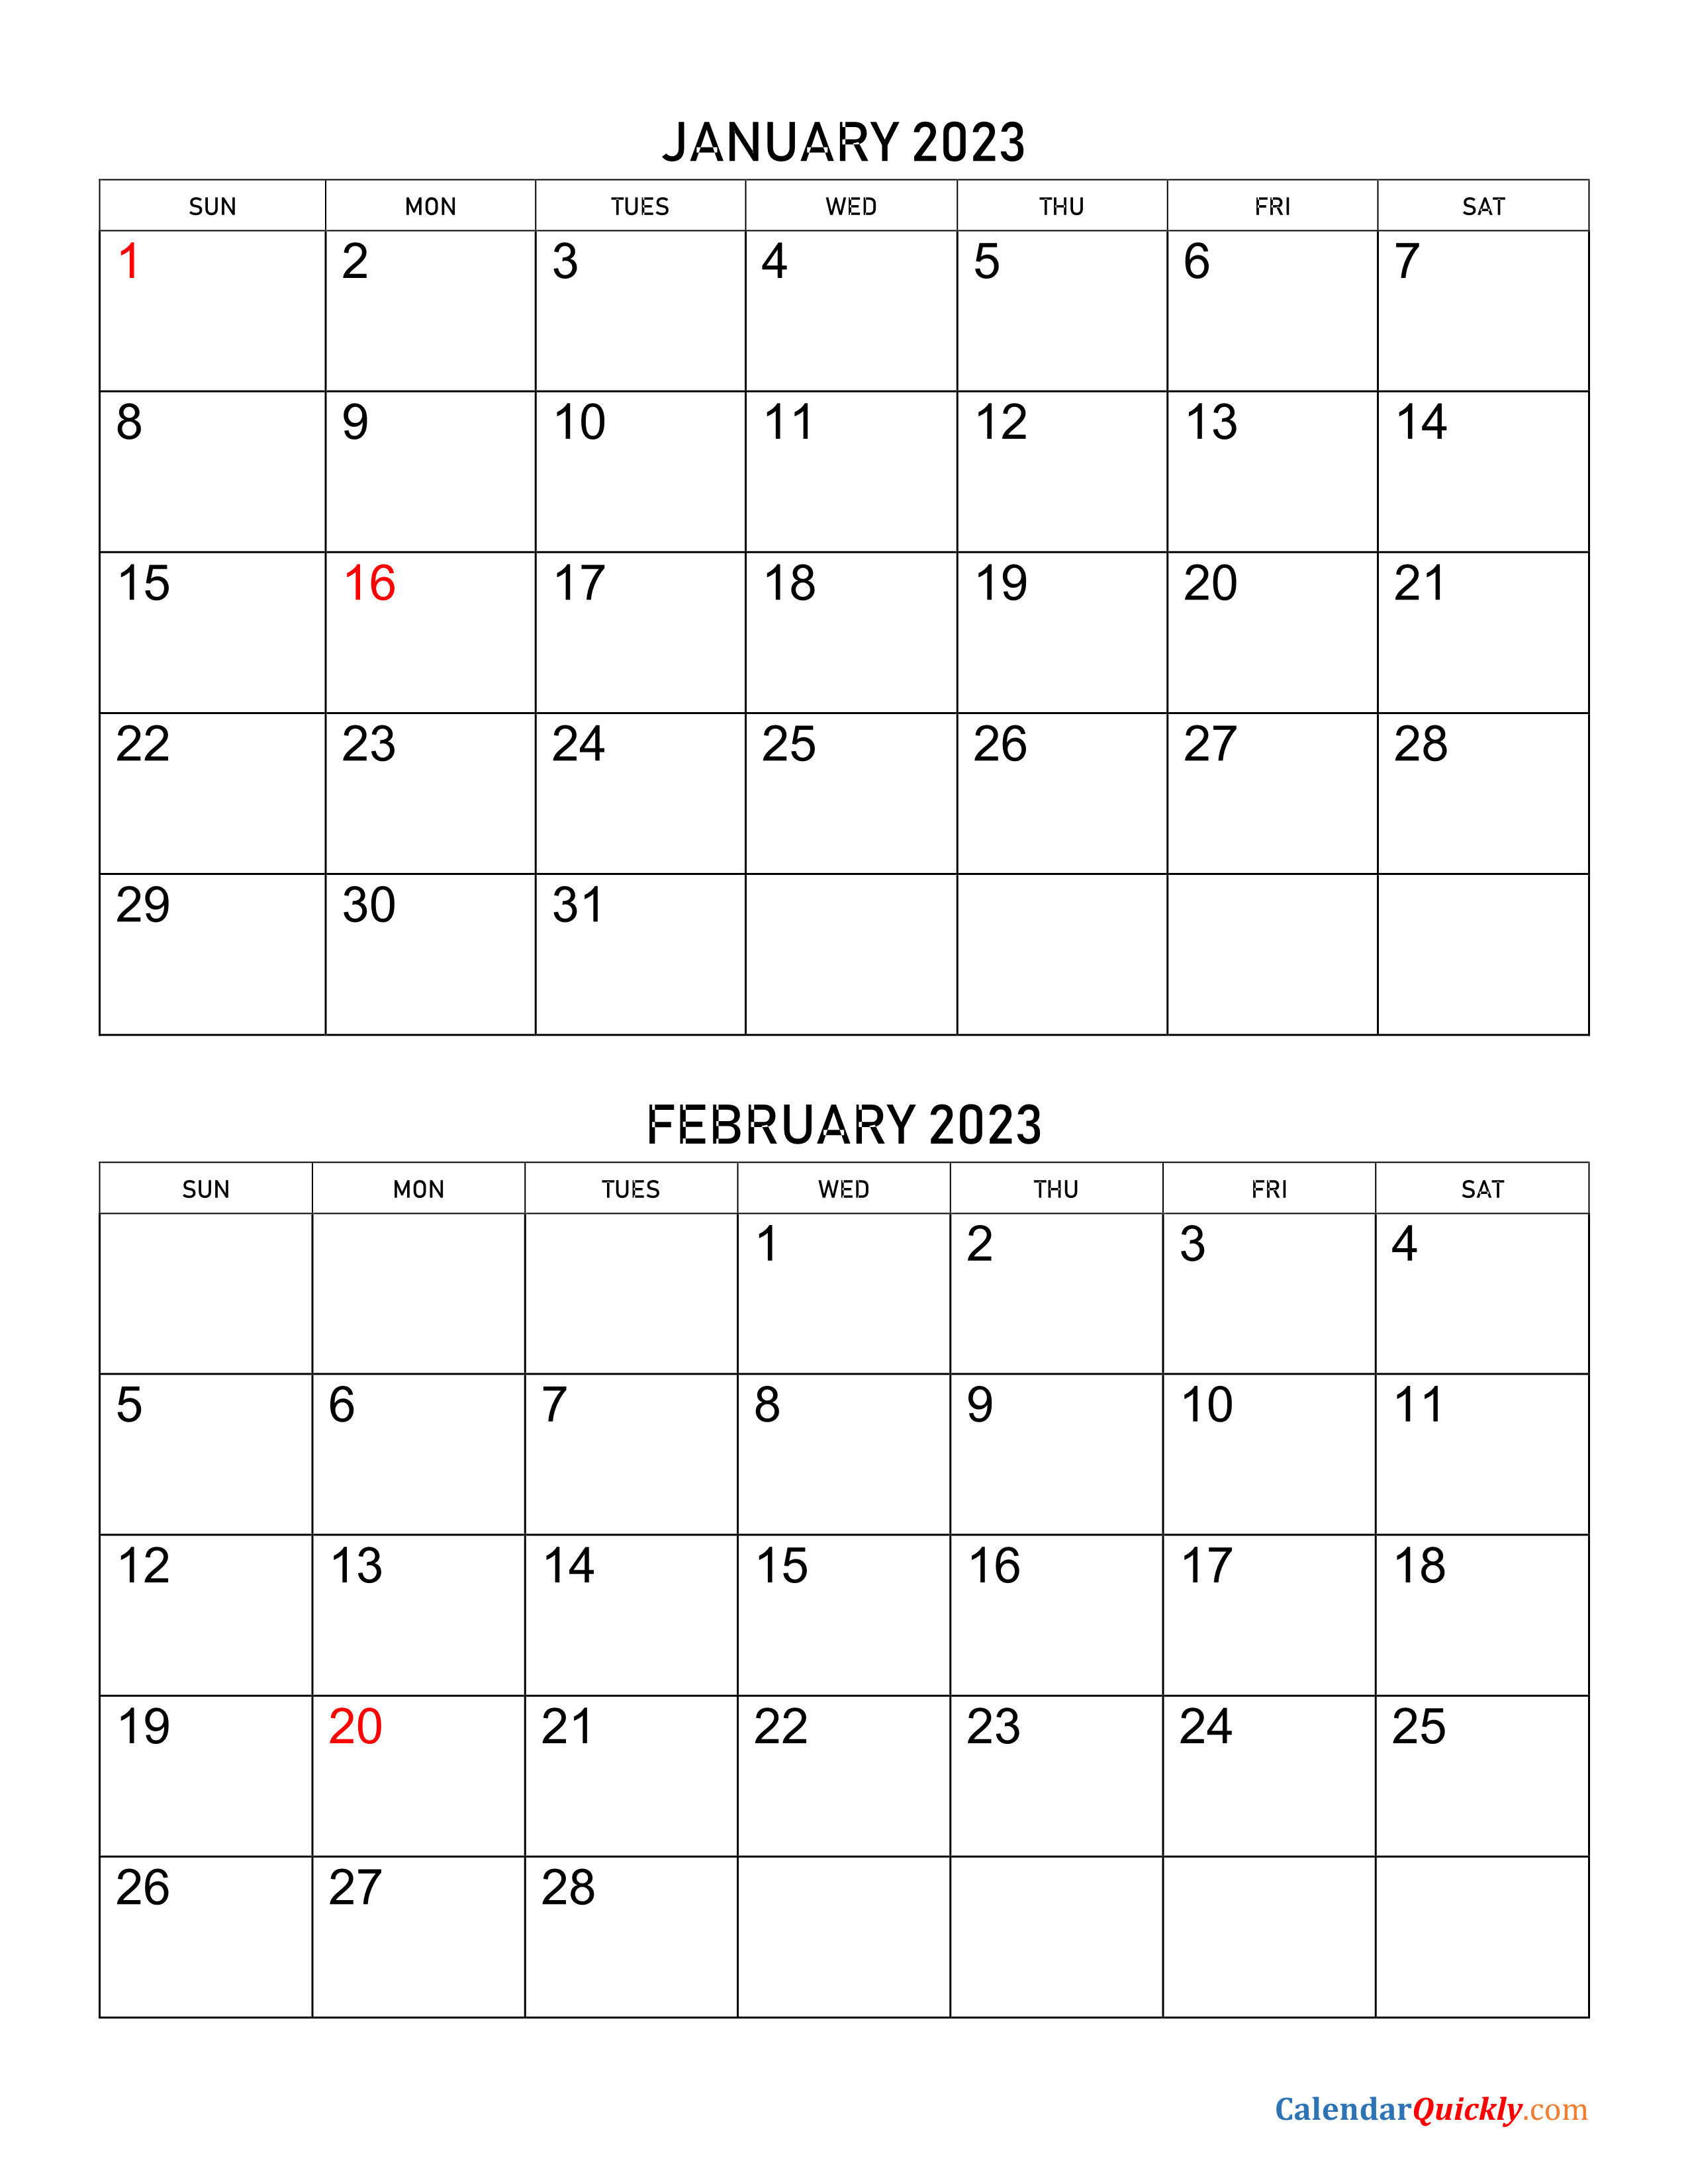 january-and-february-2023-calendar-calendar-quickly